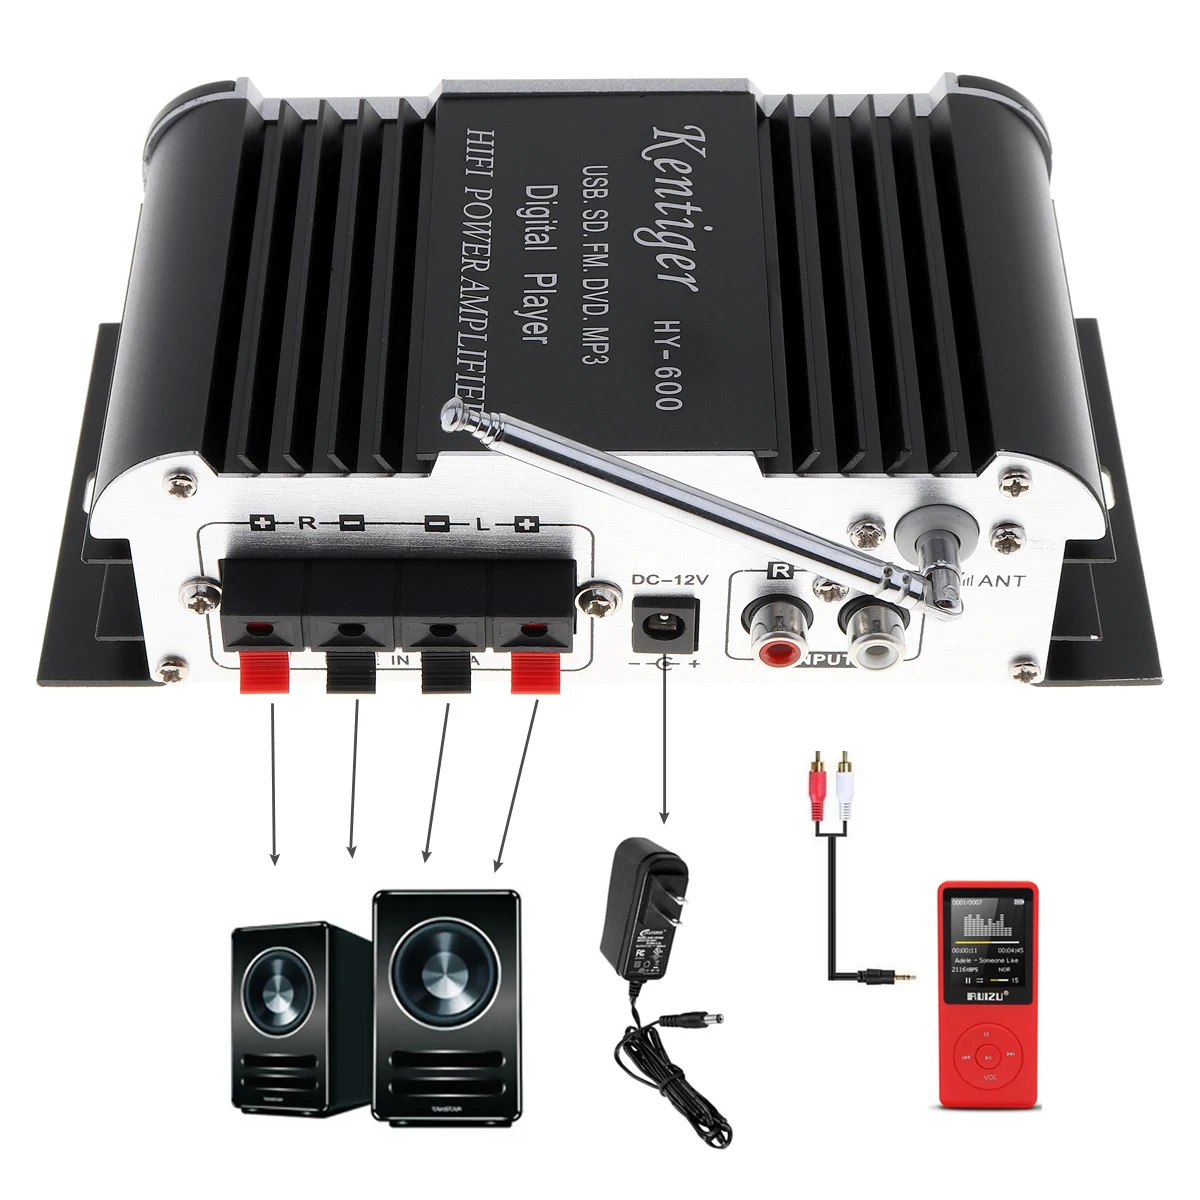 HY-600 2CH Hi-Fi автомобильный аудио усилитель мощности fm-радио USB MP3 стерео цифровой плеер U диск SD MMC карта fm-радио приемник для автомобилей